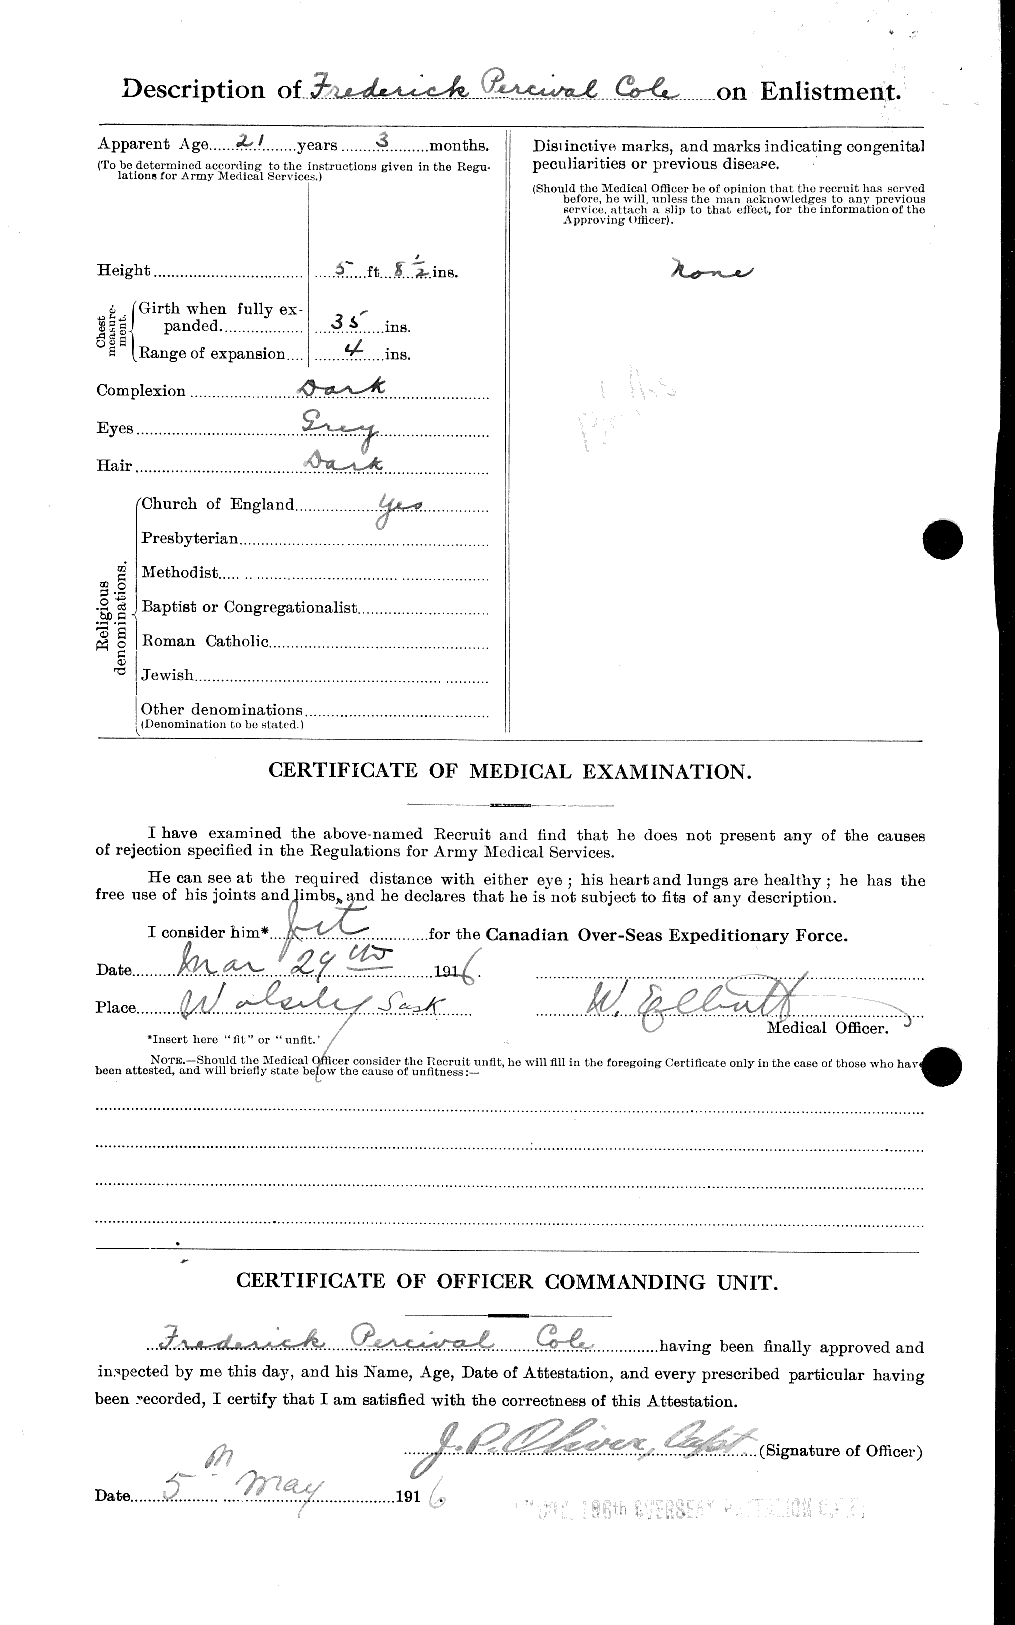 Dossiers du Personnel de la Première Guerre mondiale - CEC 027742b